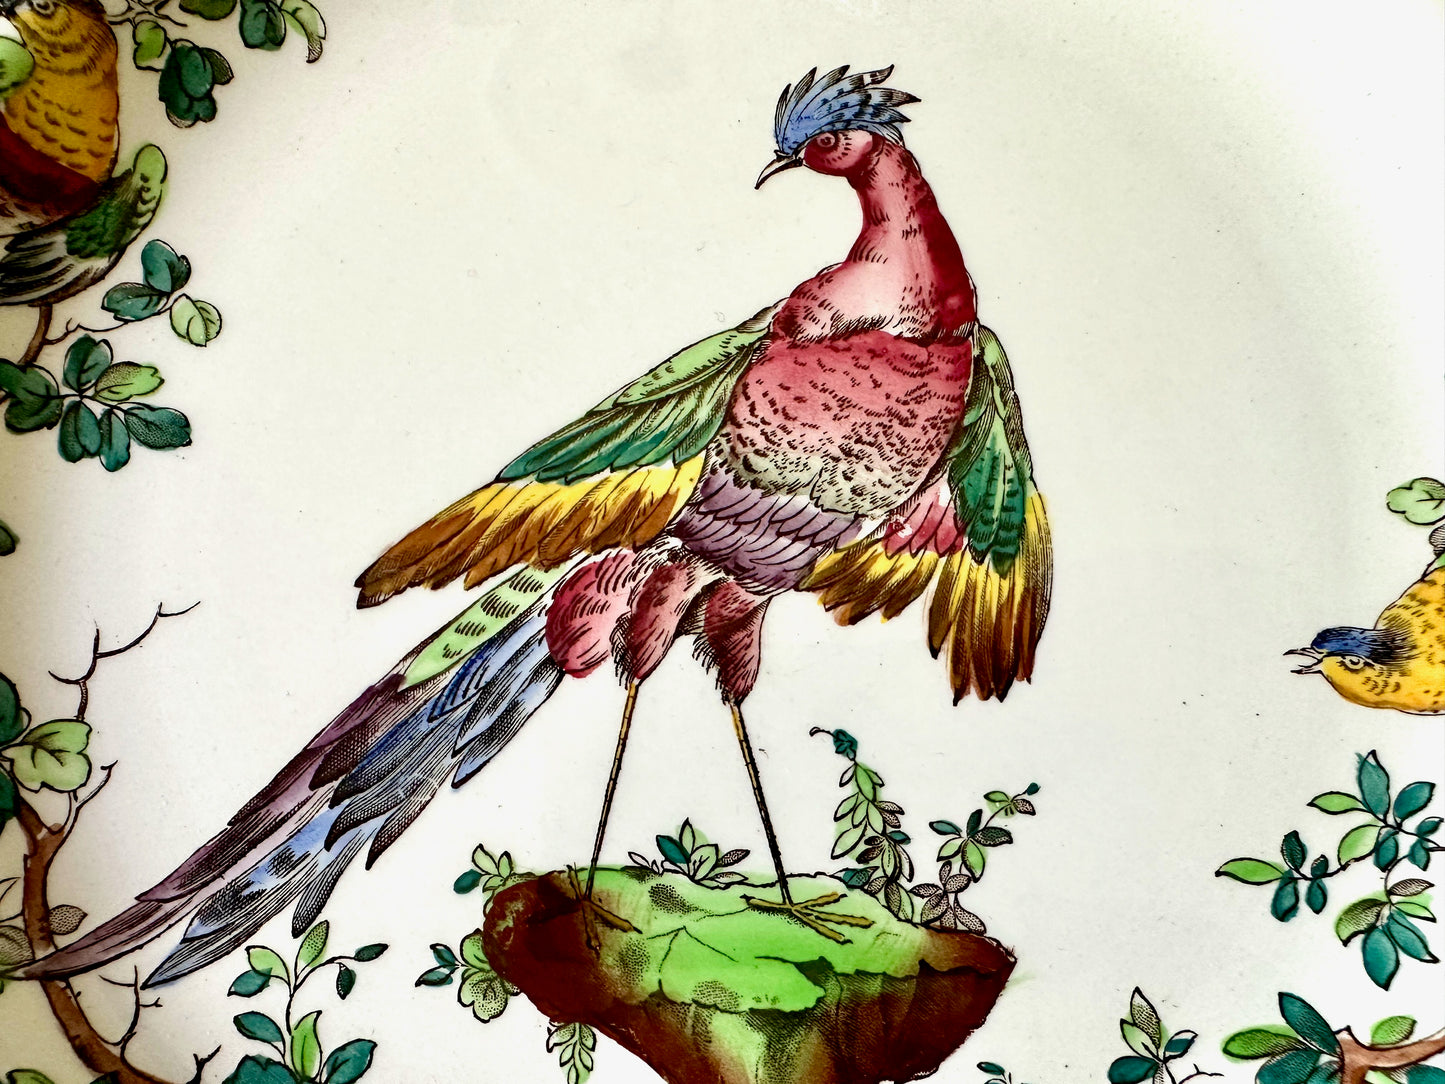 Set of 6 Spode Copeland's Chelsea Bird Vintage Dinner Plates I Made in England Dinner Plate Set - DharBazaar